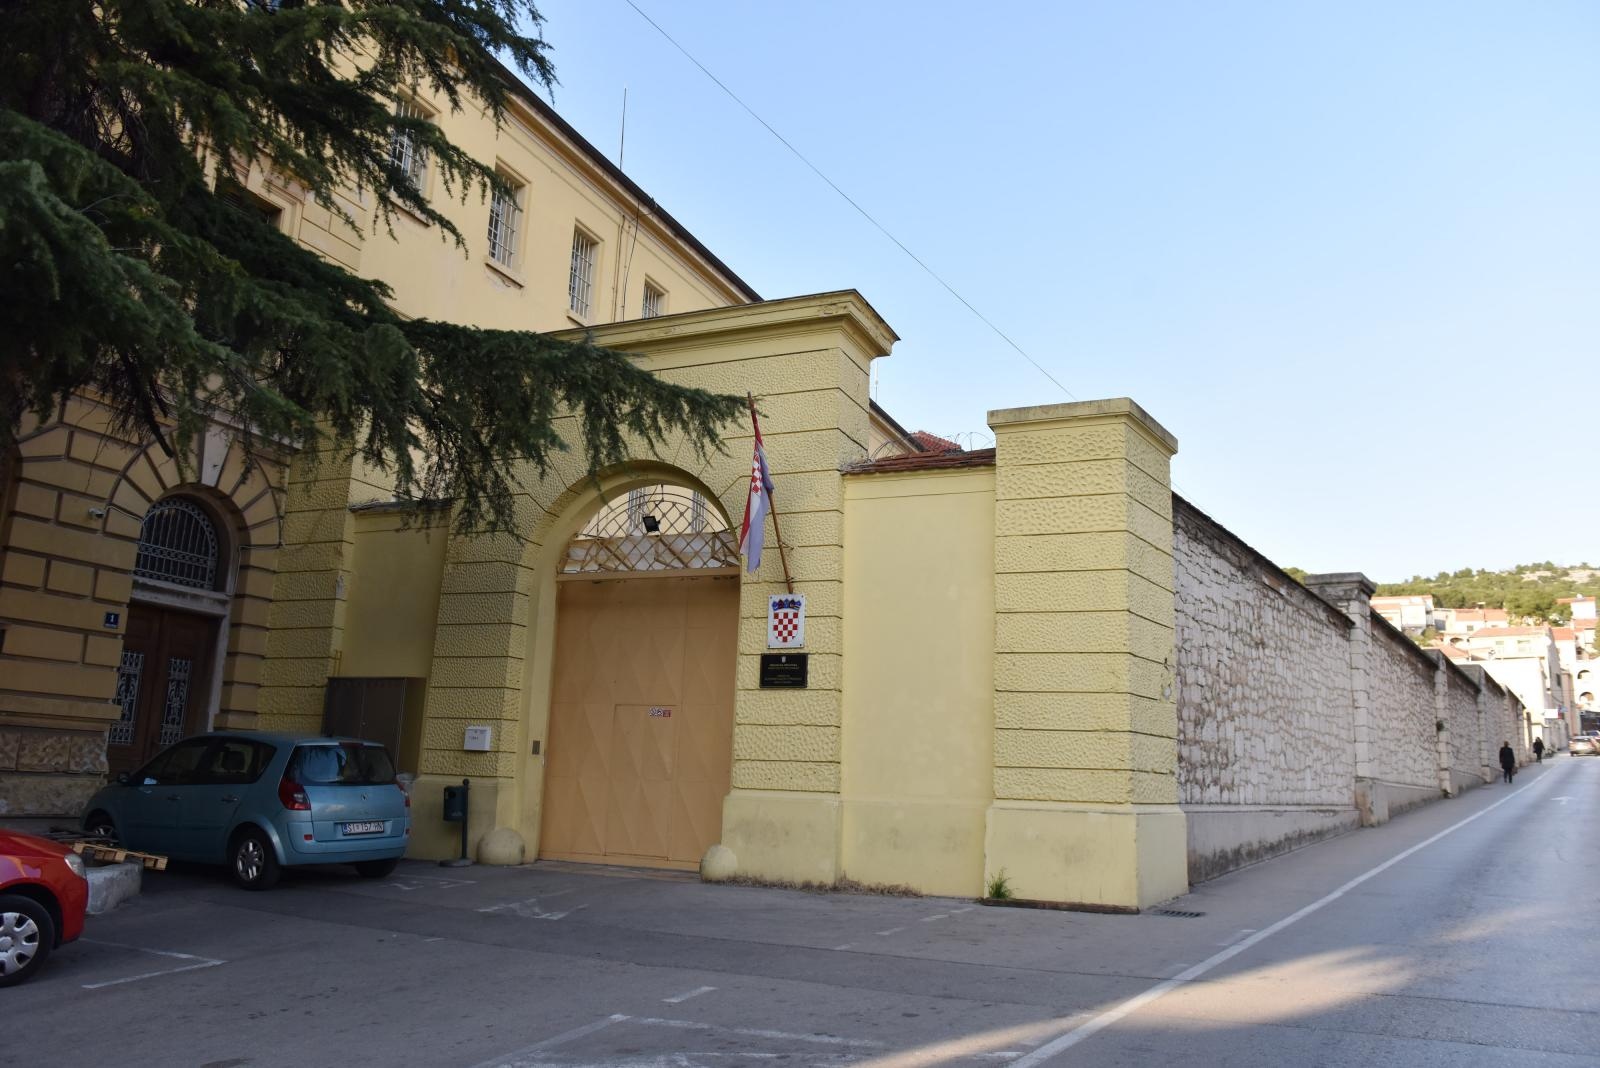 13.02.2020., Sibenik - Zgrada sibenskog zatvora. 
Photo: Hrvoje Jelavic/PIXSELL